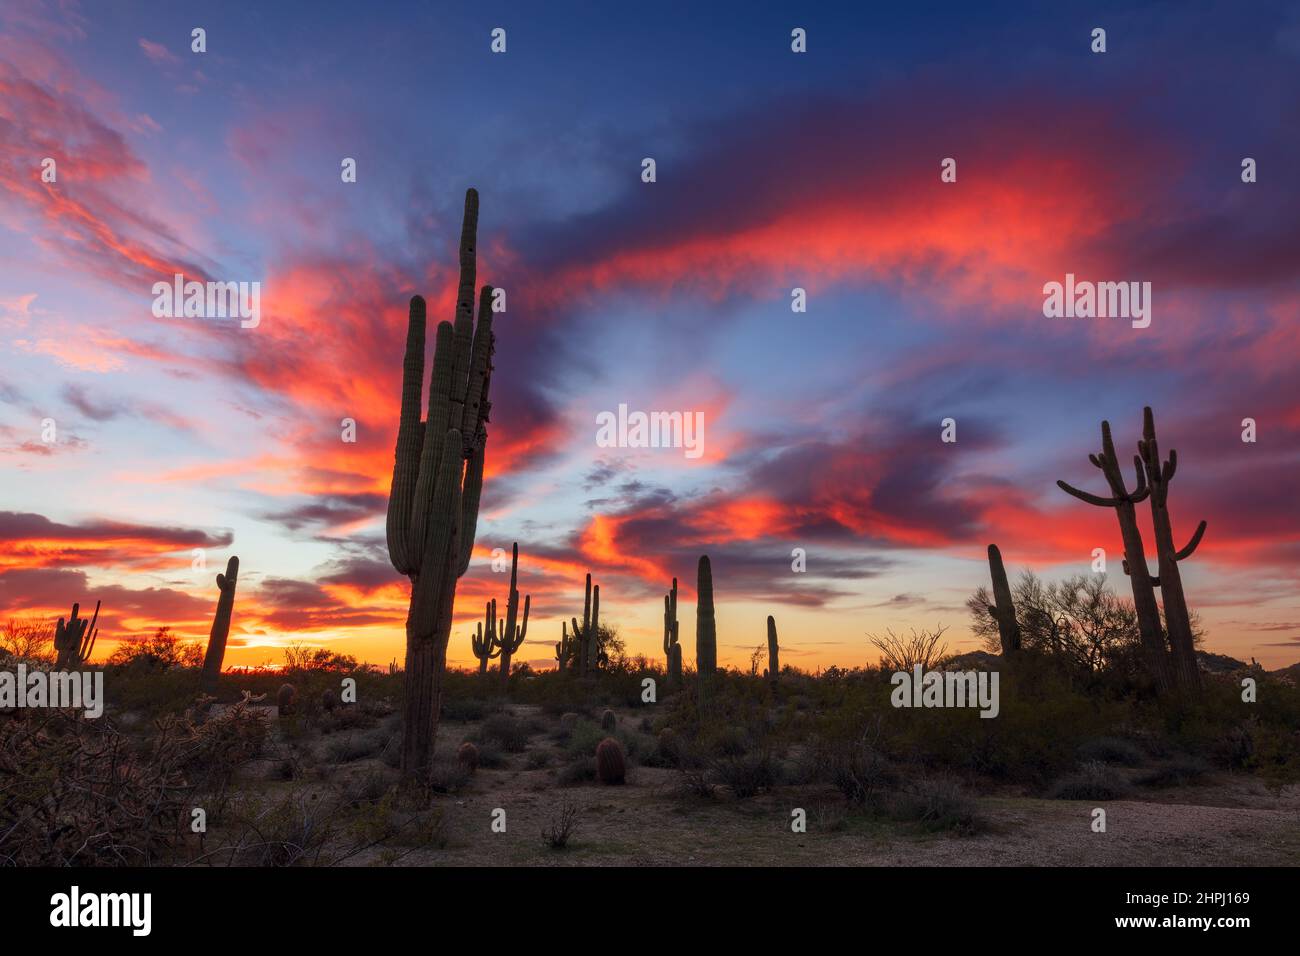 Farbenfrohe Wüstenlandschaft in Arizona bei Sonnenuntergang mit Saguaro Cactus Silhouetten Stockfoto